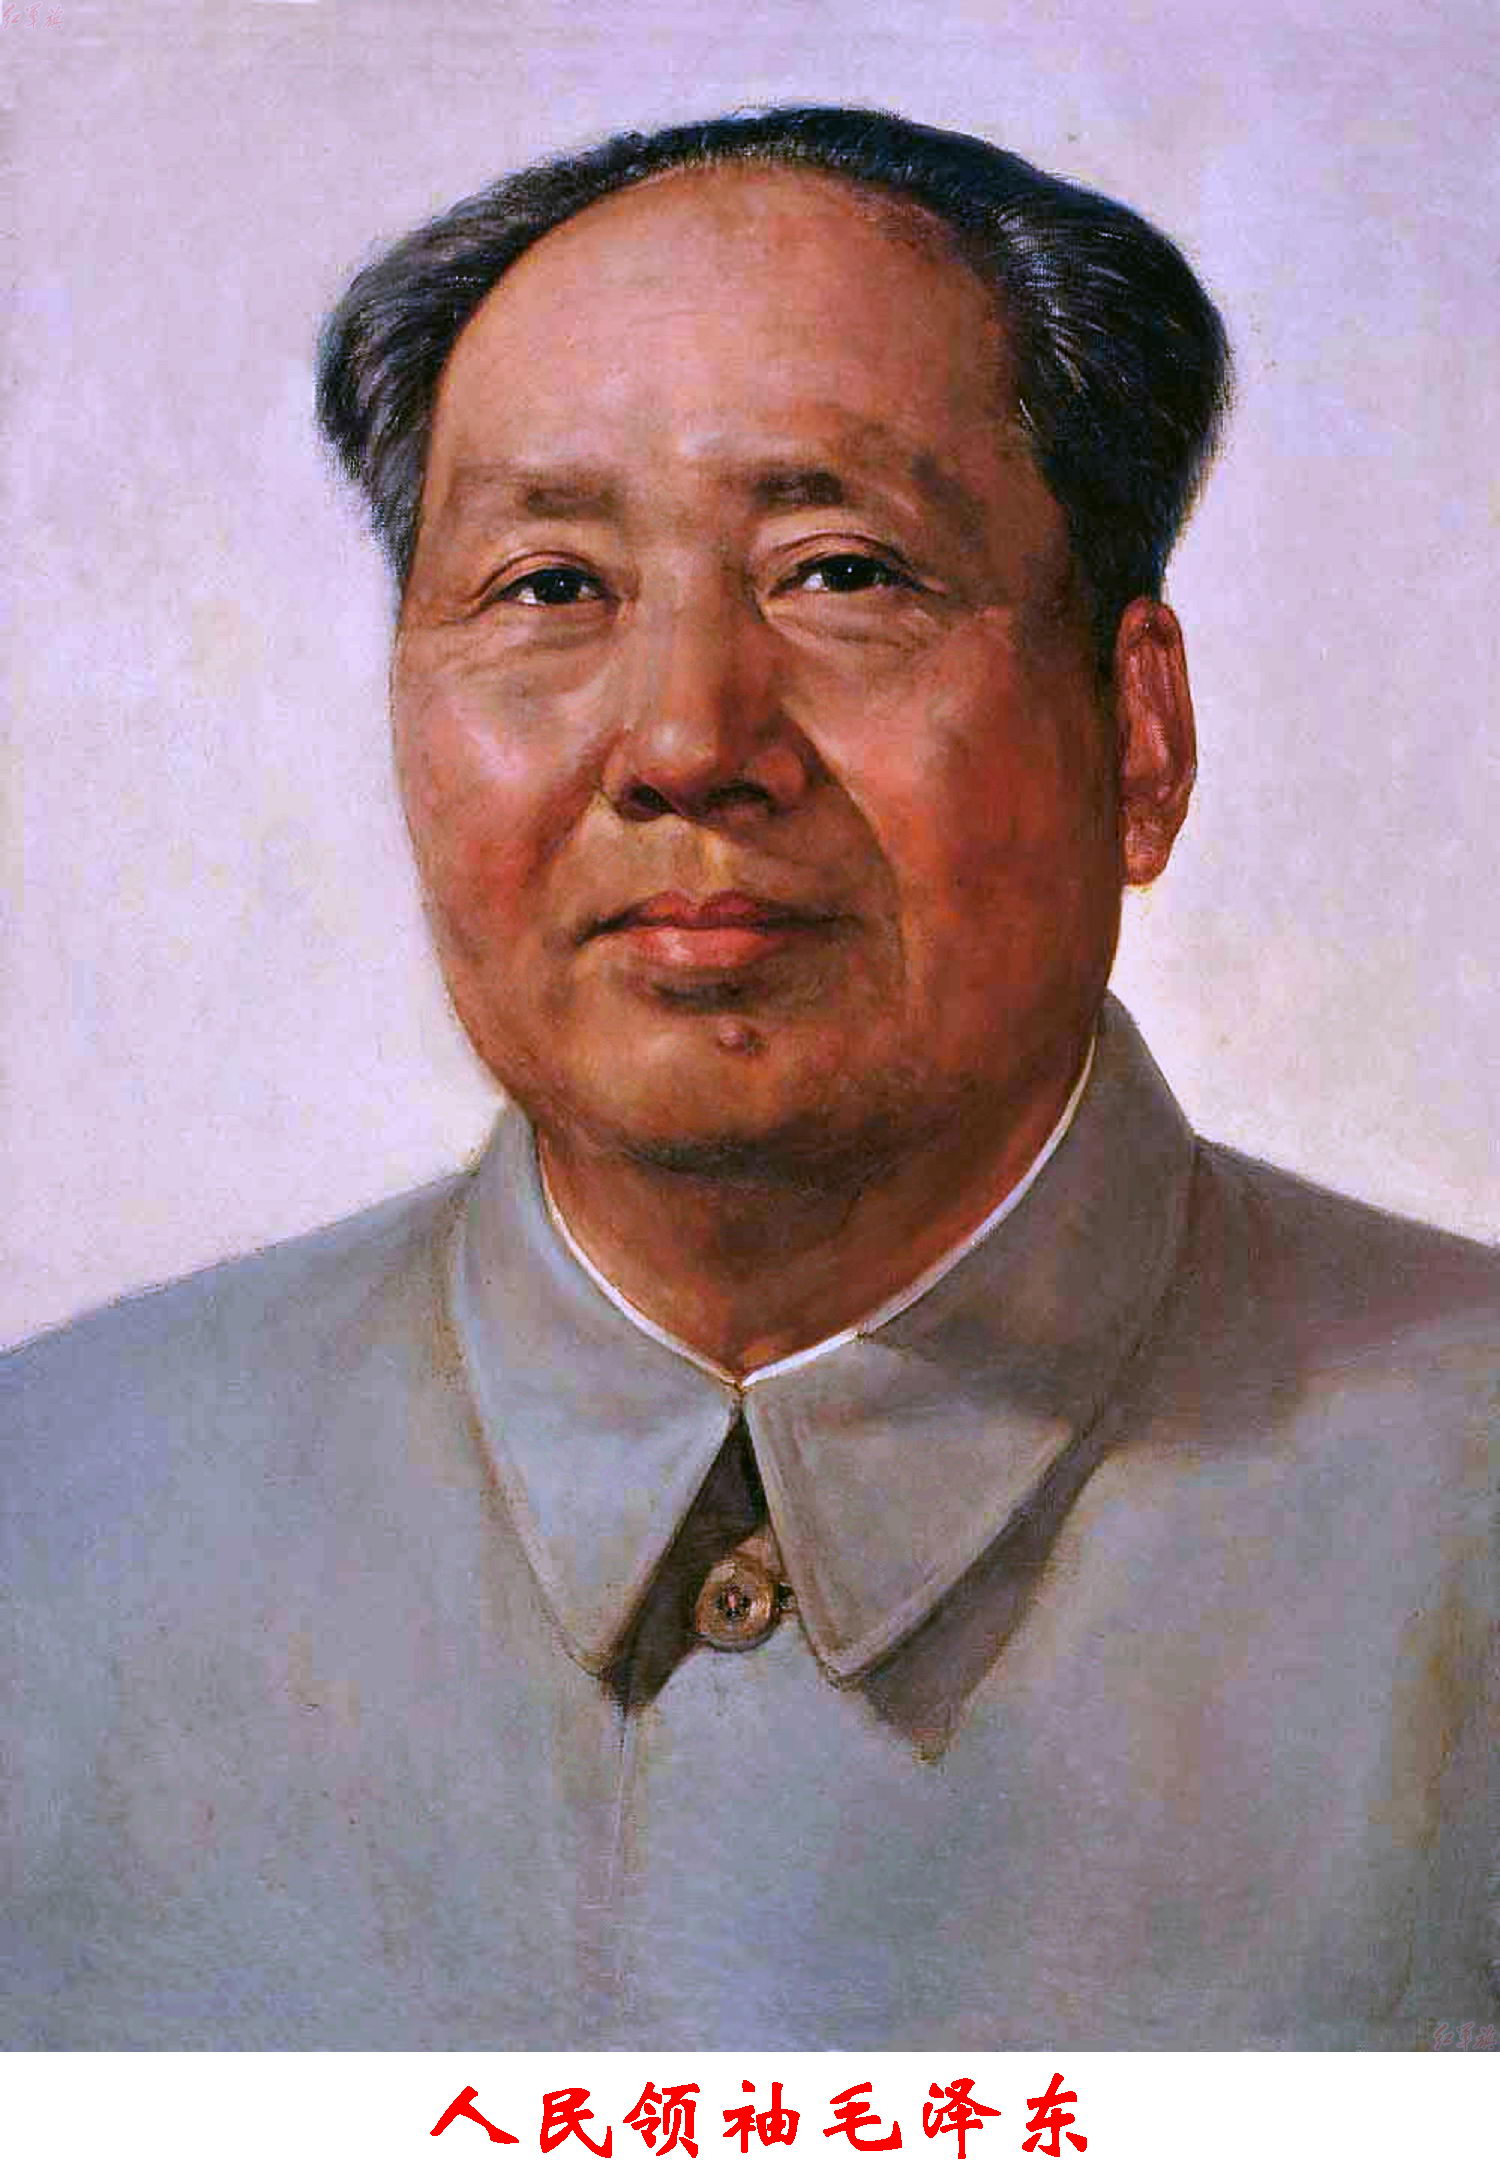 5dd0b468404f1 - Мао Цзэдун